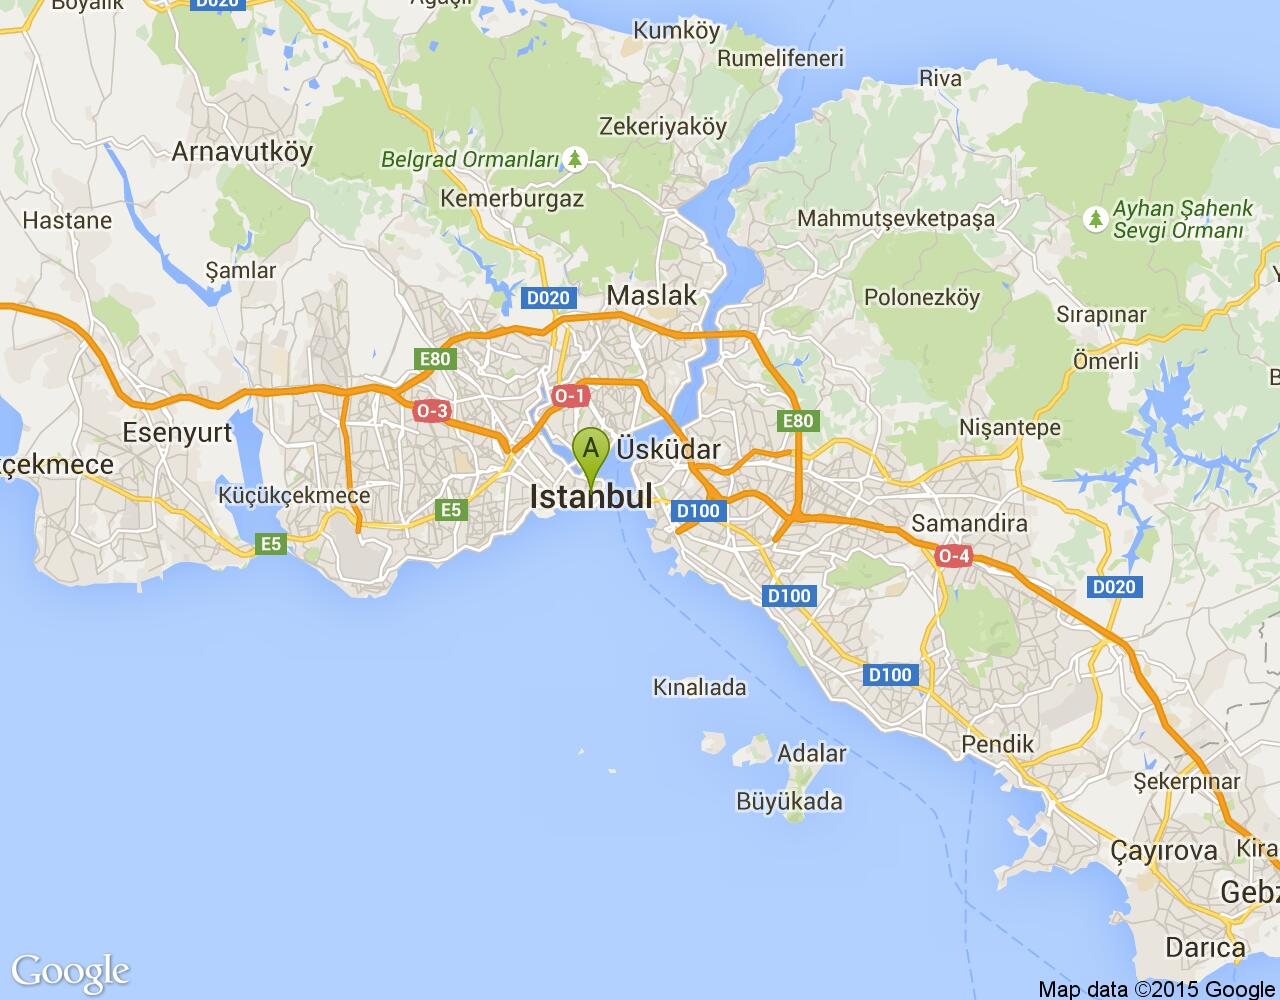 İstanbul 4.levent Metro Etro harita